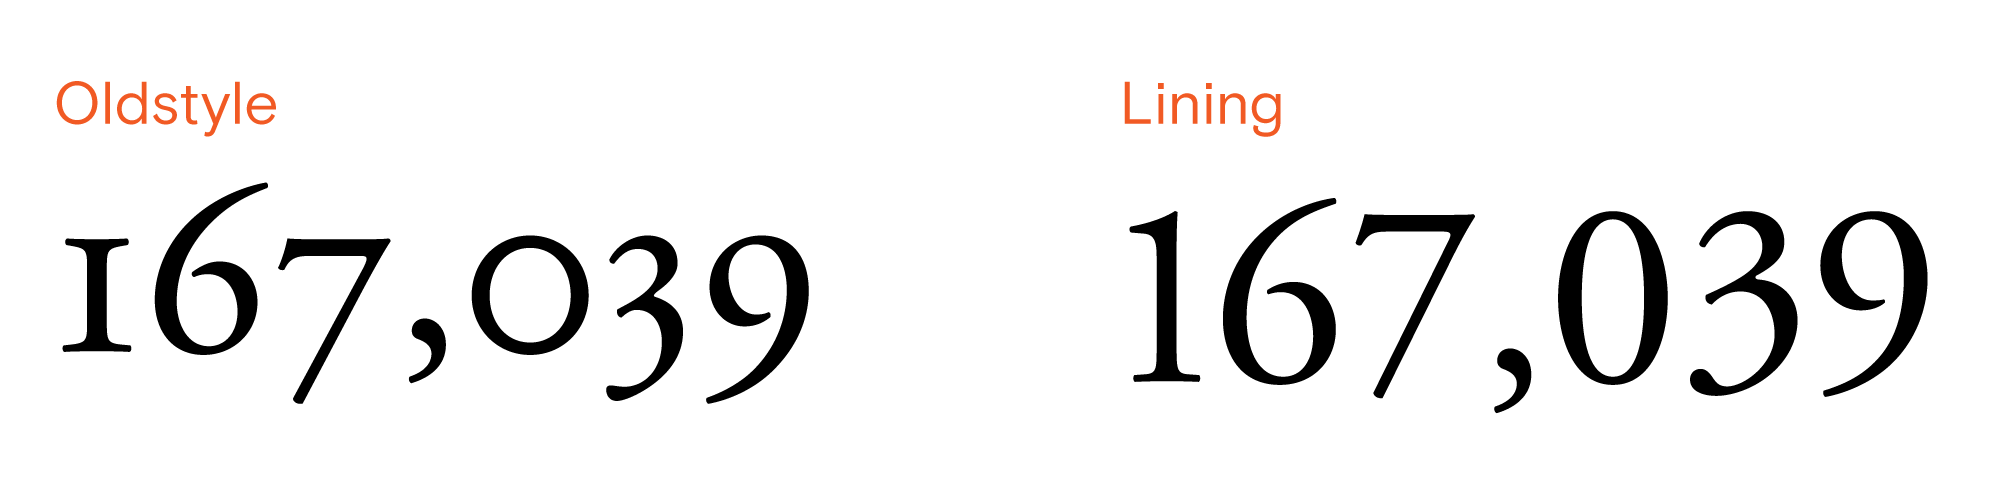 左邊顯示不等高 (Oldstyle) 數字的樣子，右邊是等高 (Lining) 數字的樣子